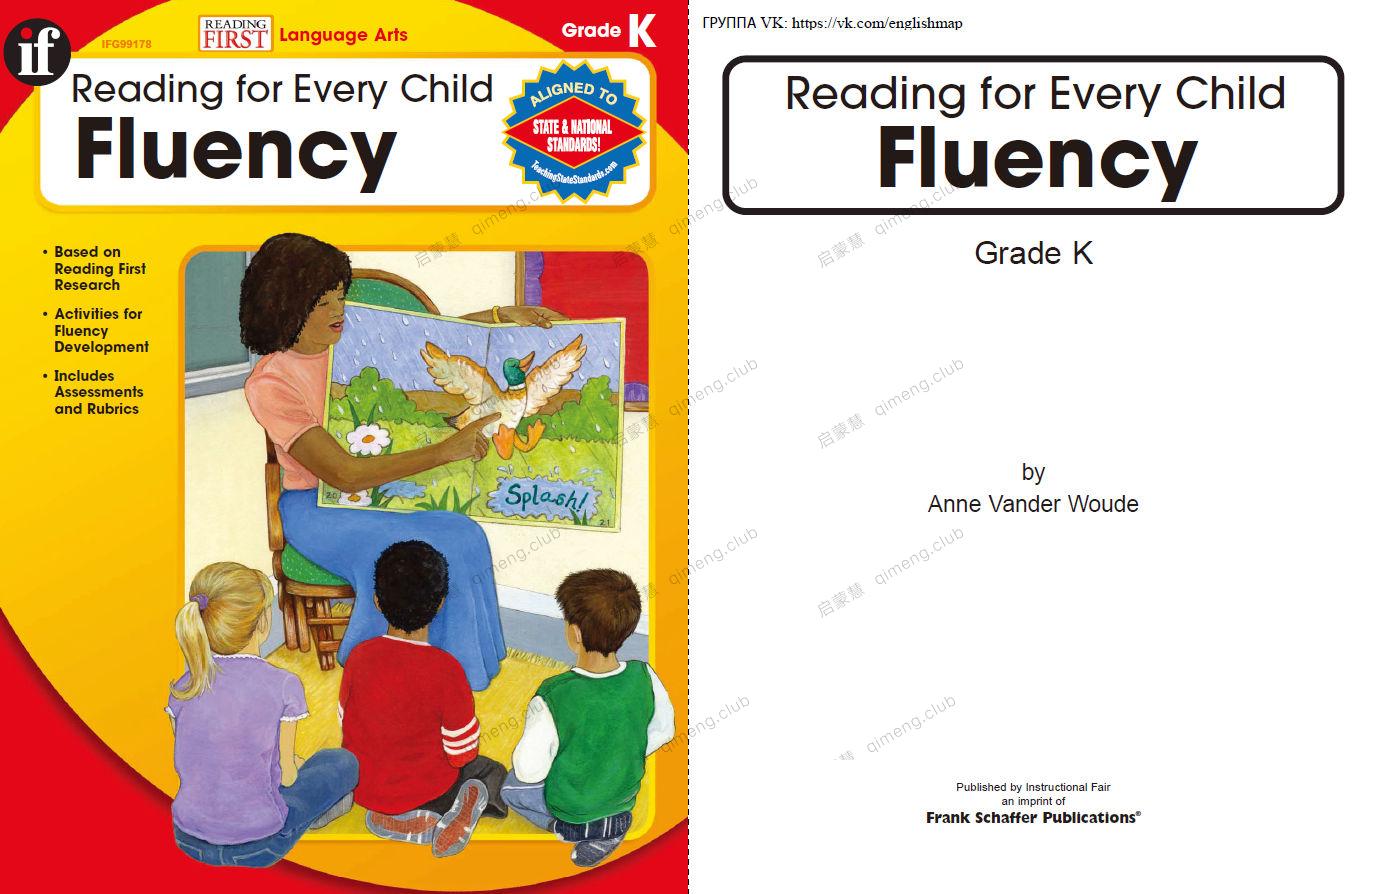 不可缺少的英文阅读流利训练《Reading for Every Child Fluency》6册GK-G5